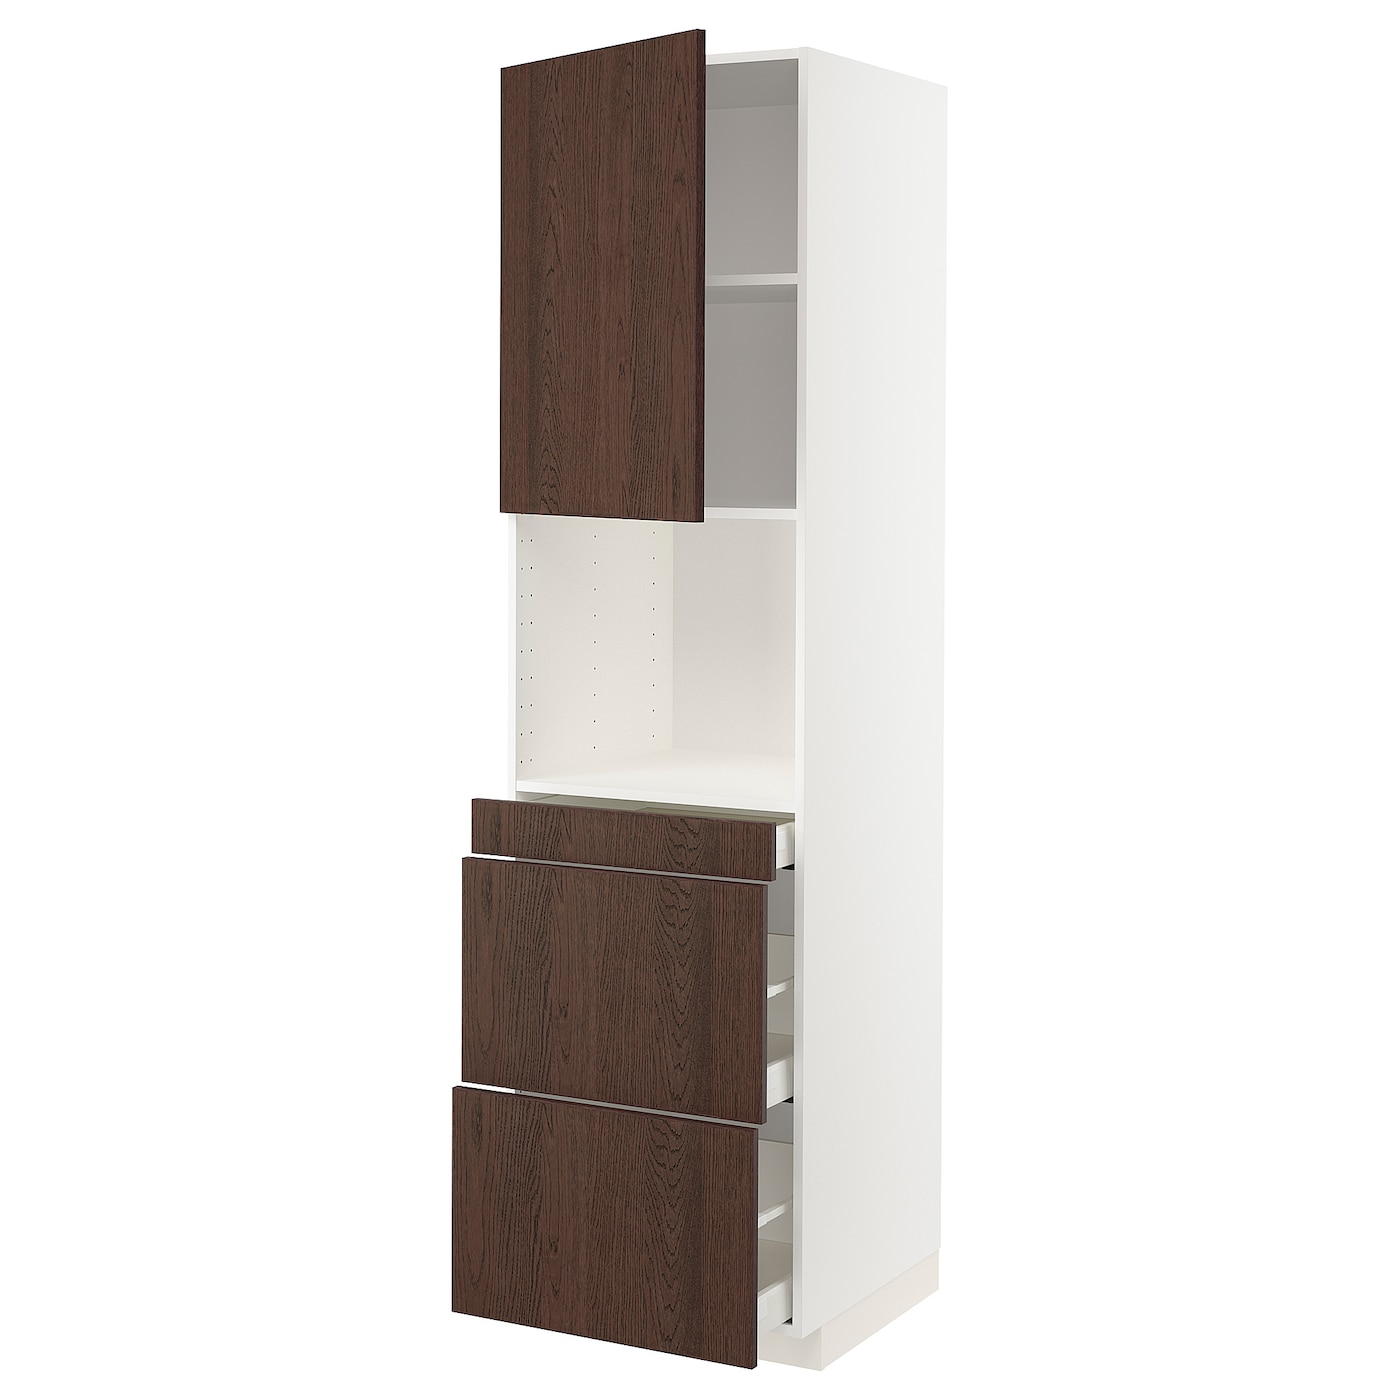 Шкаф - METOD / MAXIMERA  IKEA/ МЕТОД/МАКСИМЕРА  ИКЕА,  228х60 см, коричневый/белый